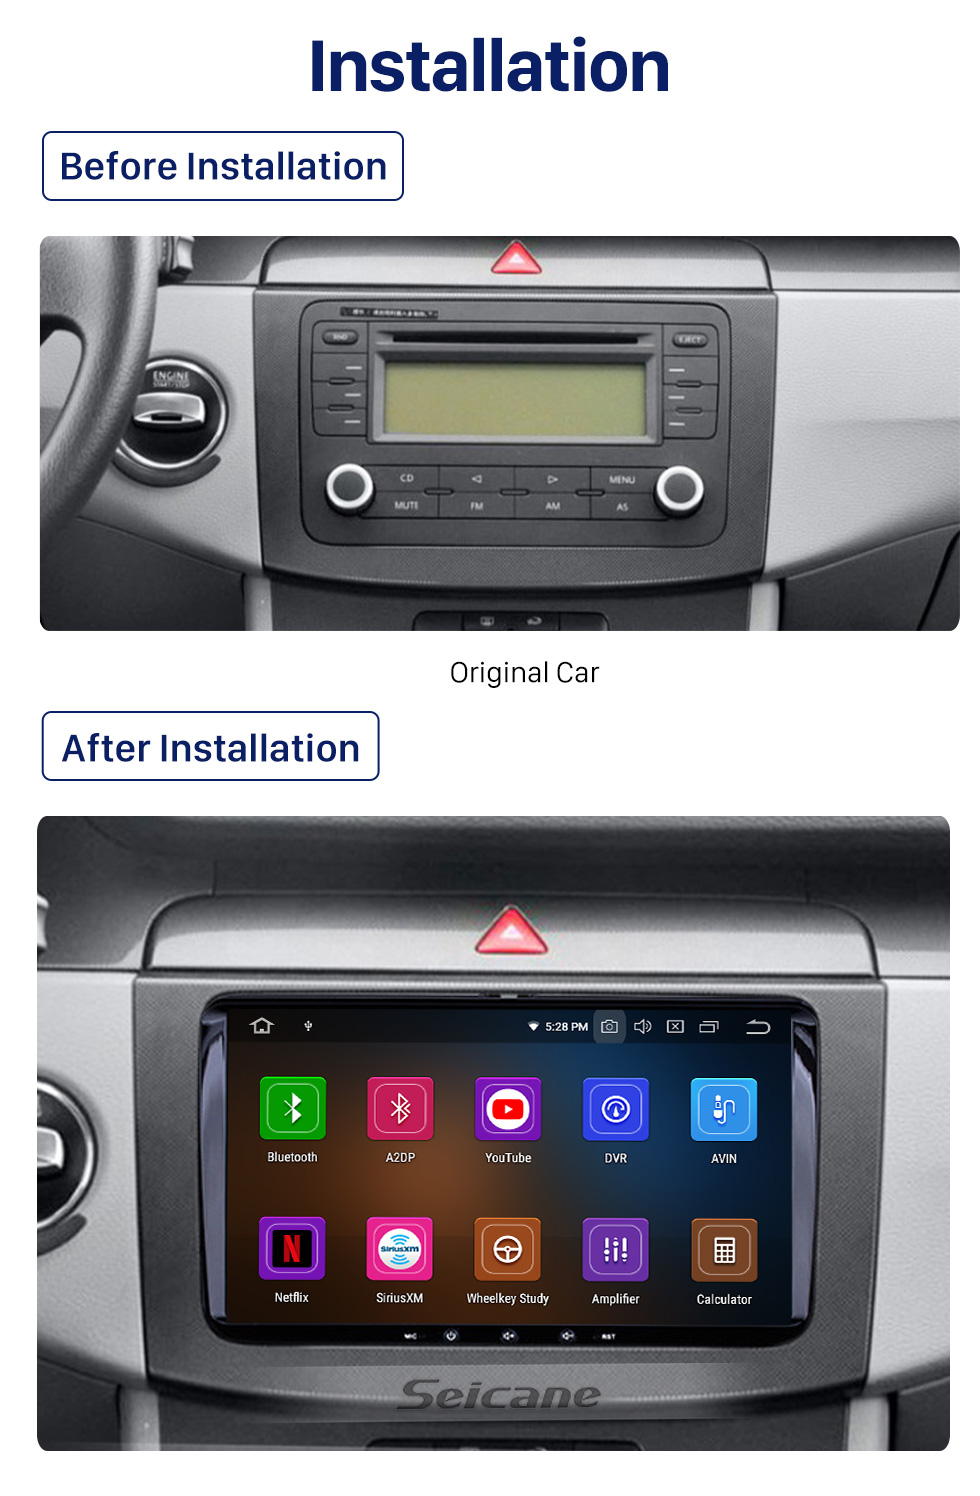 Seicane 9 Zoll Android 10.0 Radio Auto GPS Navigation Head Unit für 2008-2013 VW Volkswagen Passat Scirocco CC Golf 6 mit 3G WiFi Spiegel Link OBD2 Bluetooth